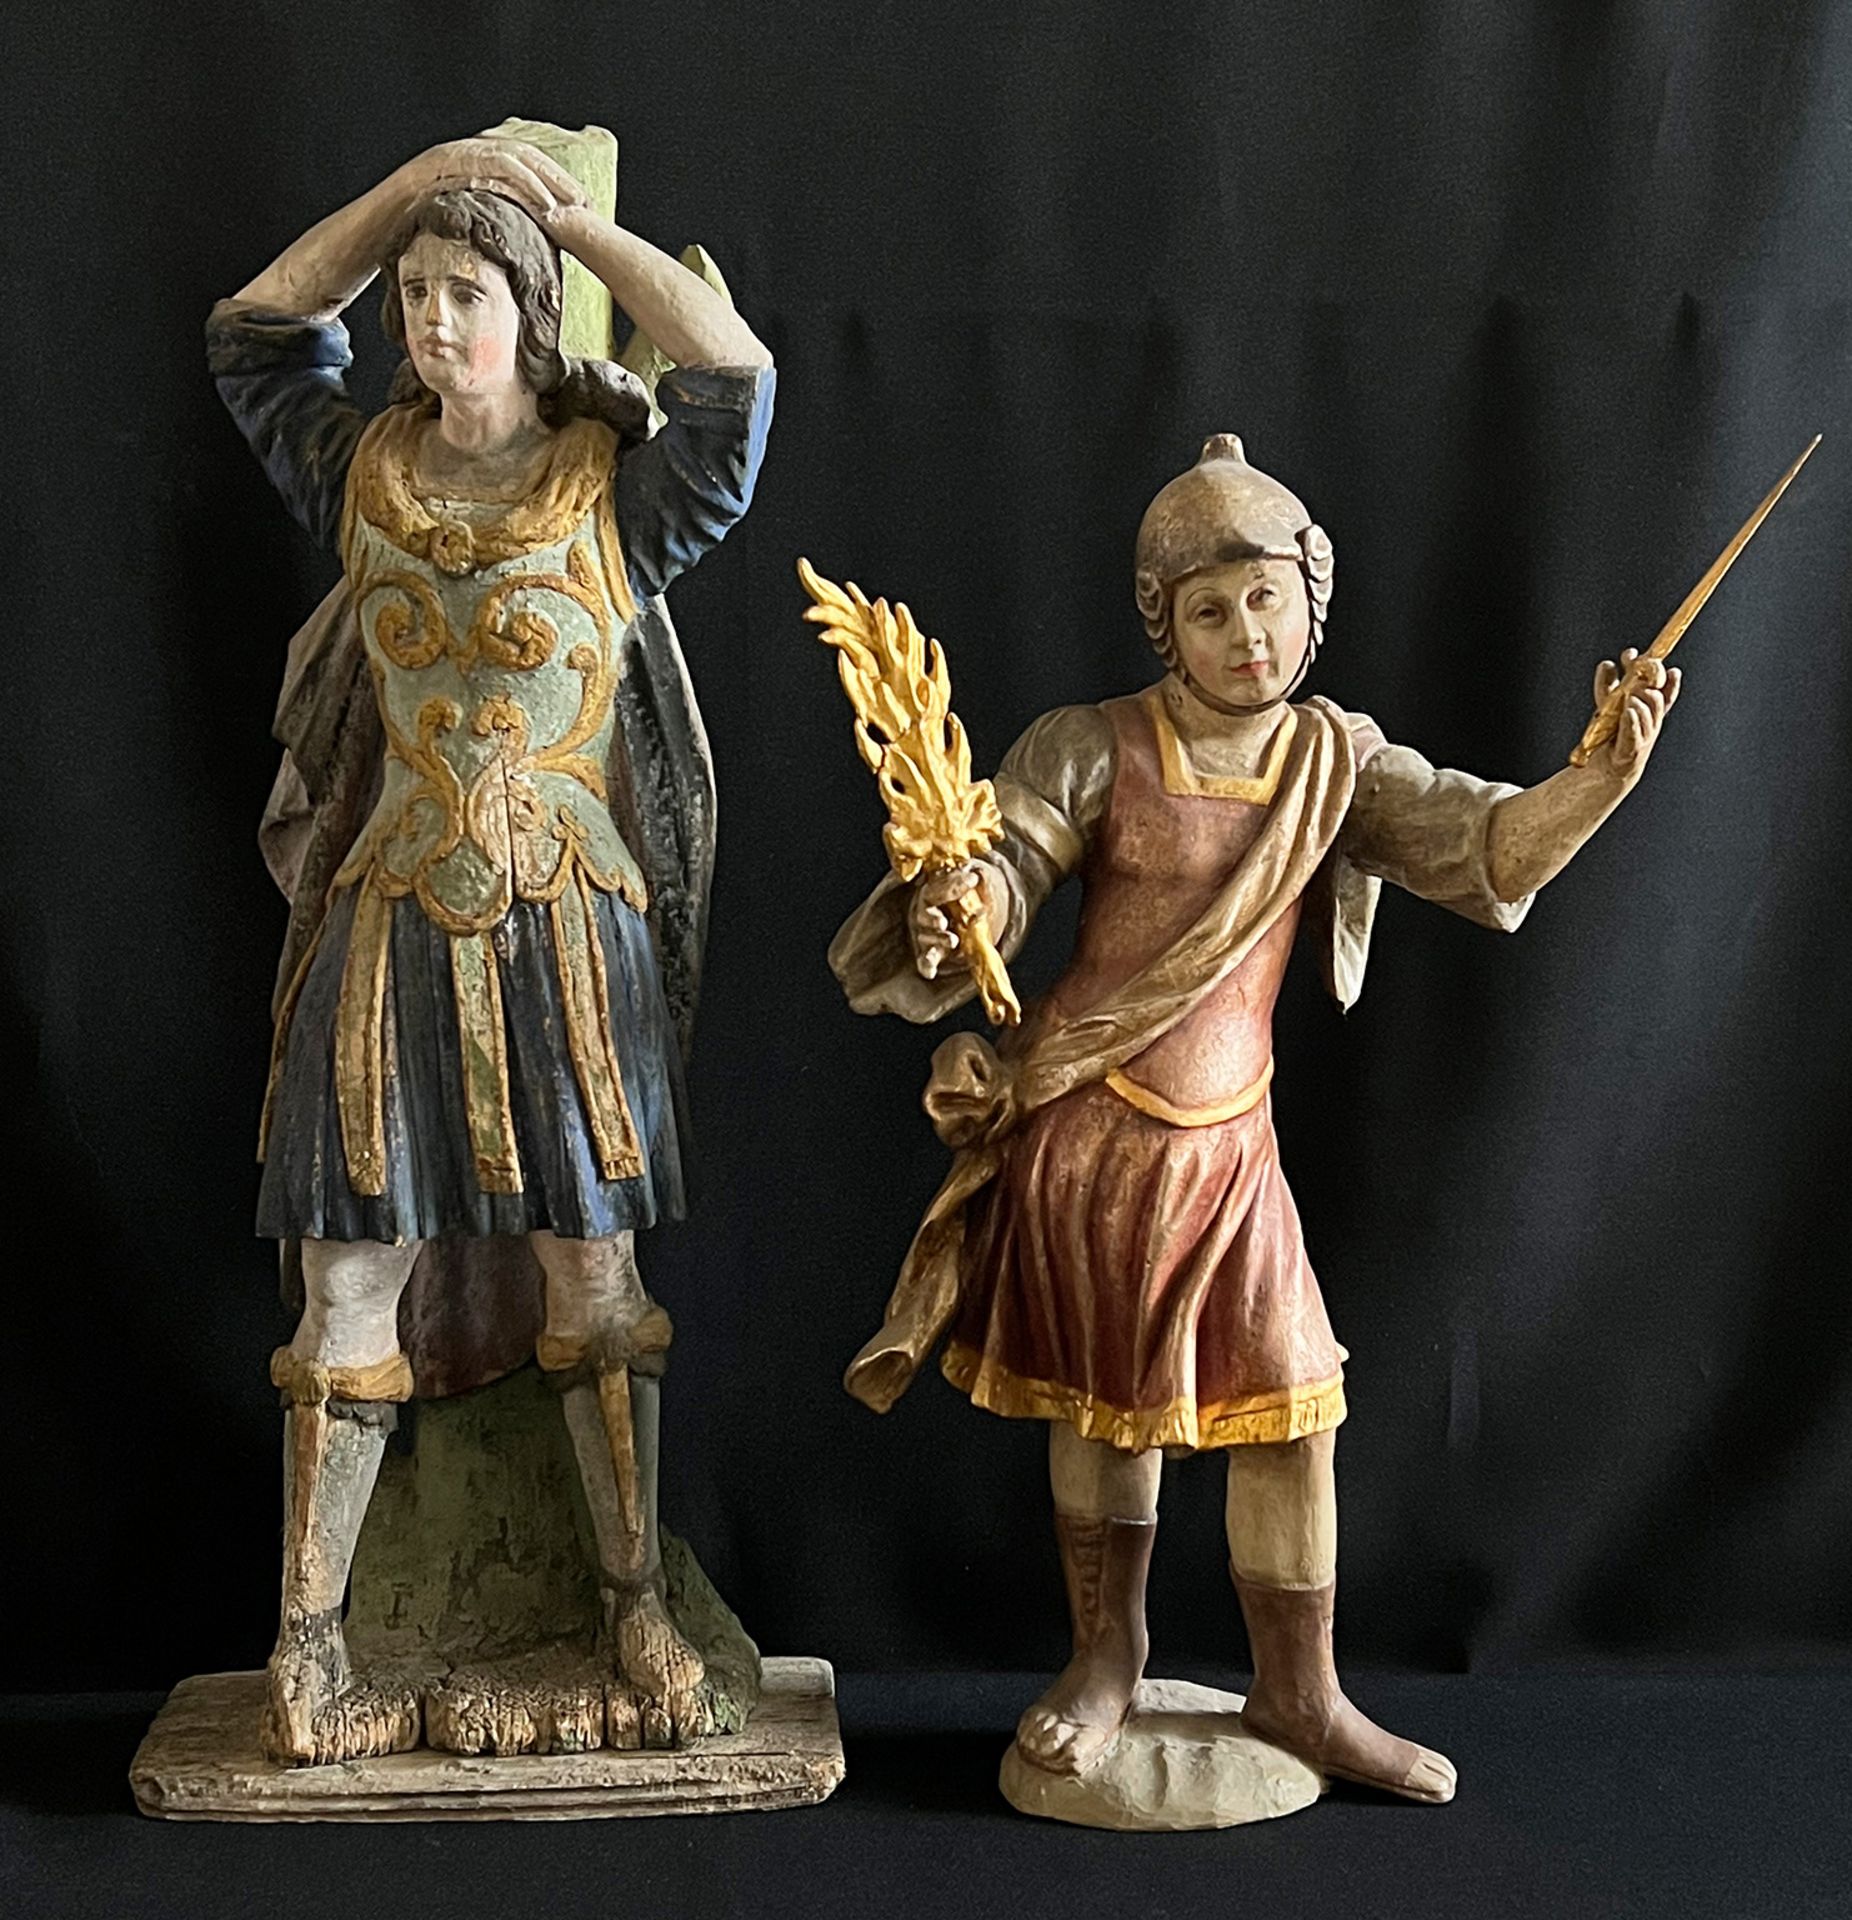 2 Figuren von römischen Soldaten, Holz, farbig gefasst/ two figures of Roman soldiers, wood,